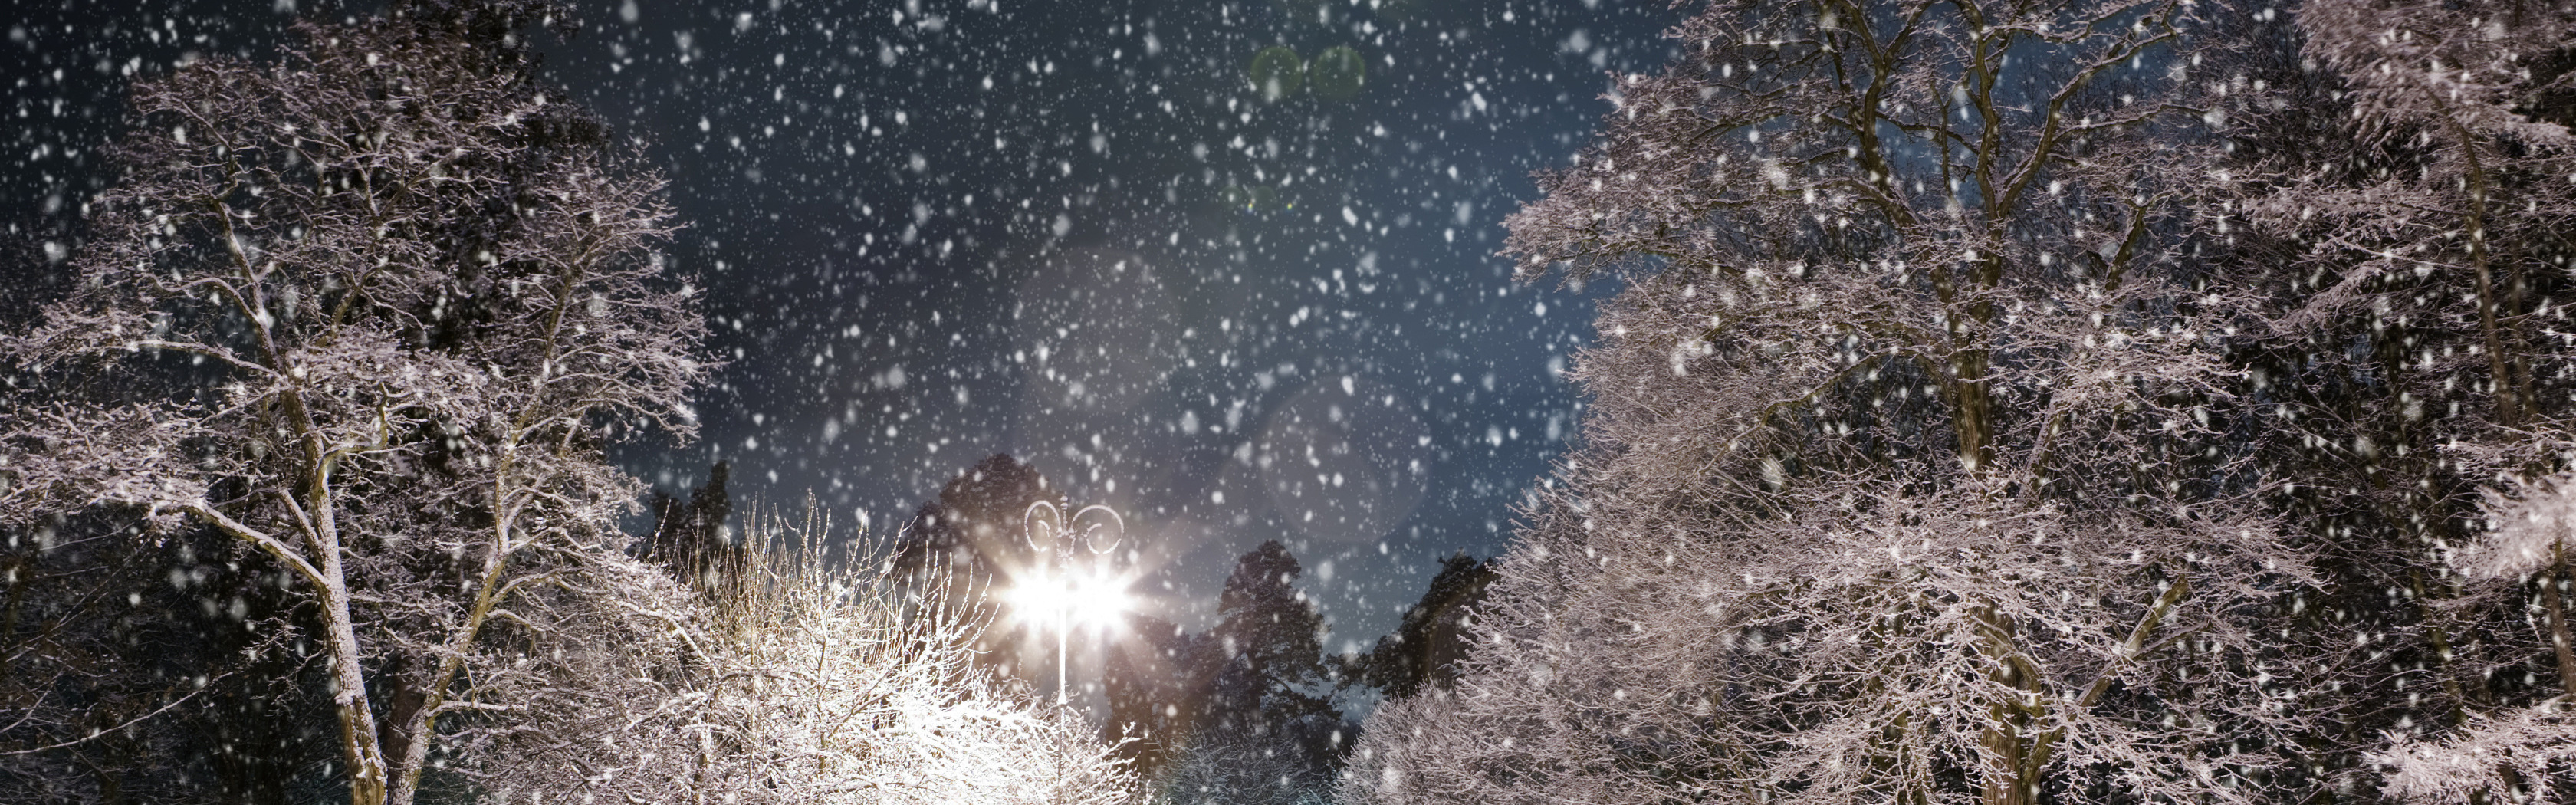 Падающий снег. Метель ночью. Вечер снег идет деревья. Снегопад небо. Шум падающего снега